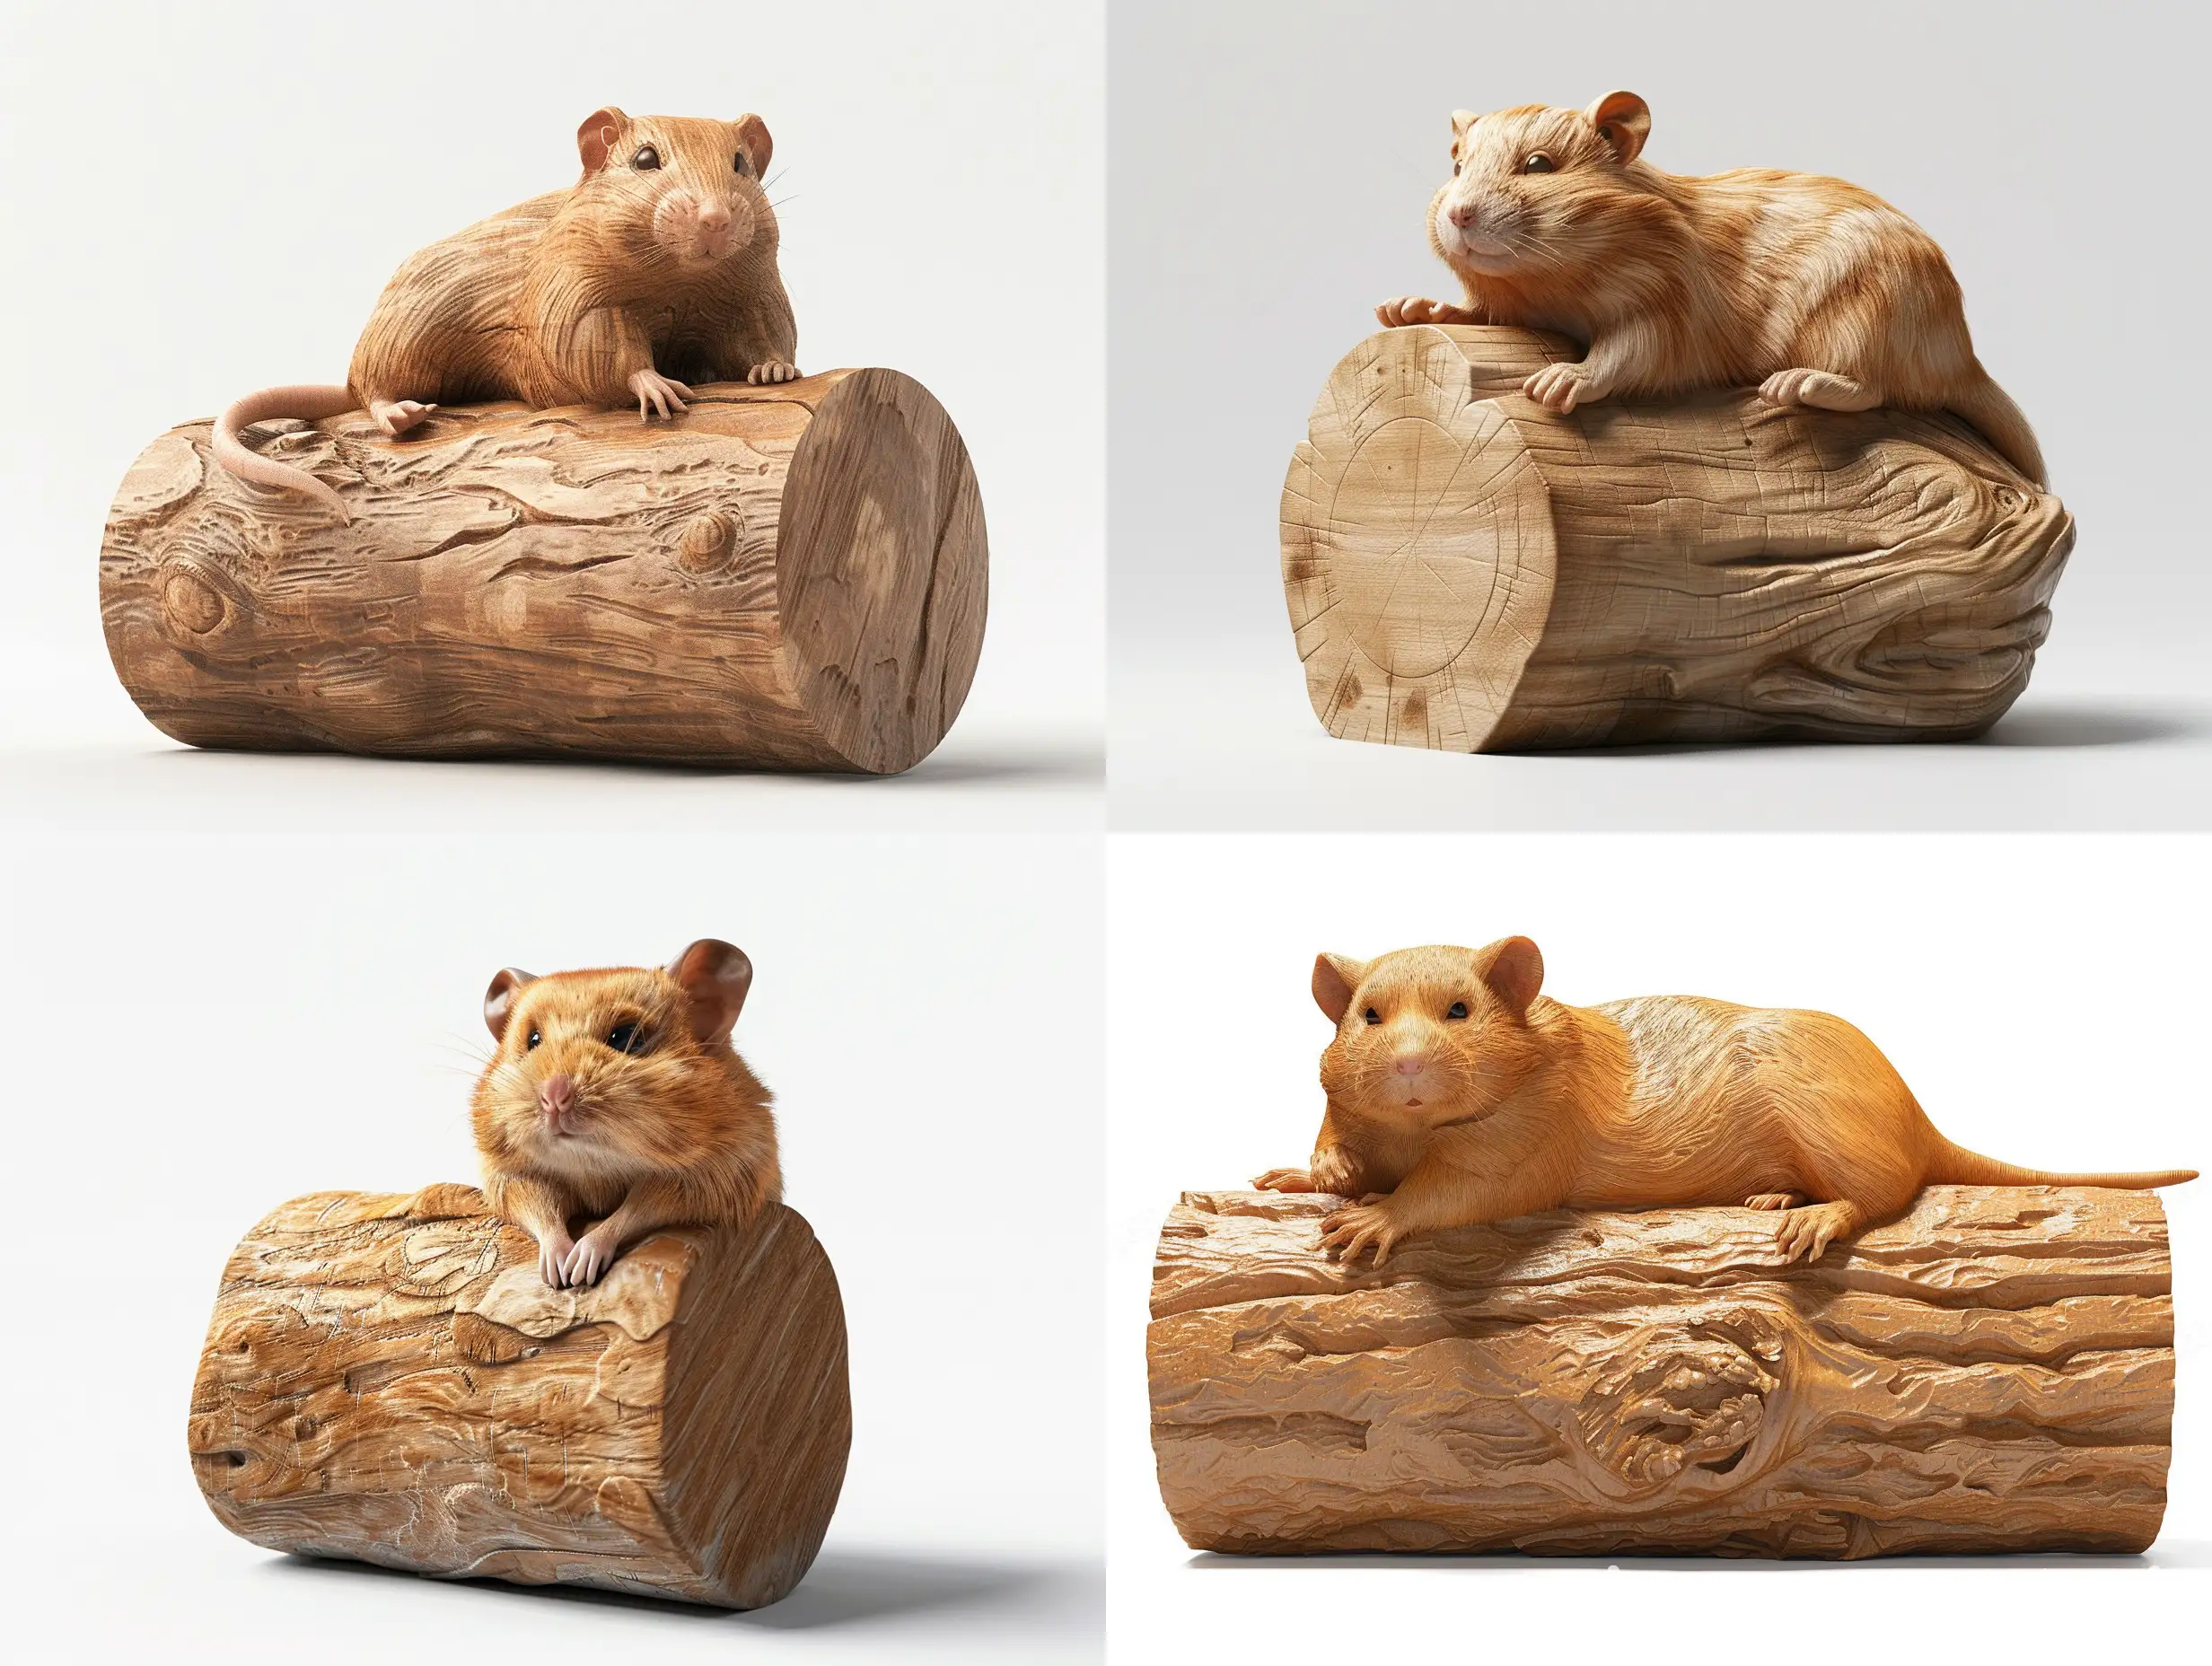 Realistic-Wooden-Hamster-Sculpture-on-Cylinder-Professional-8K-Render